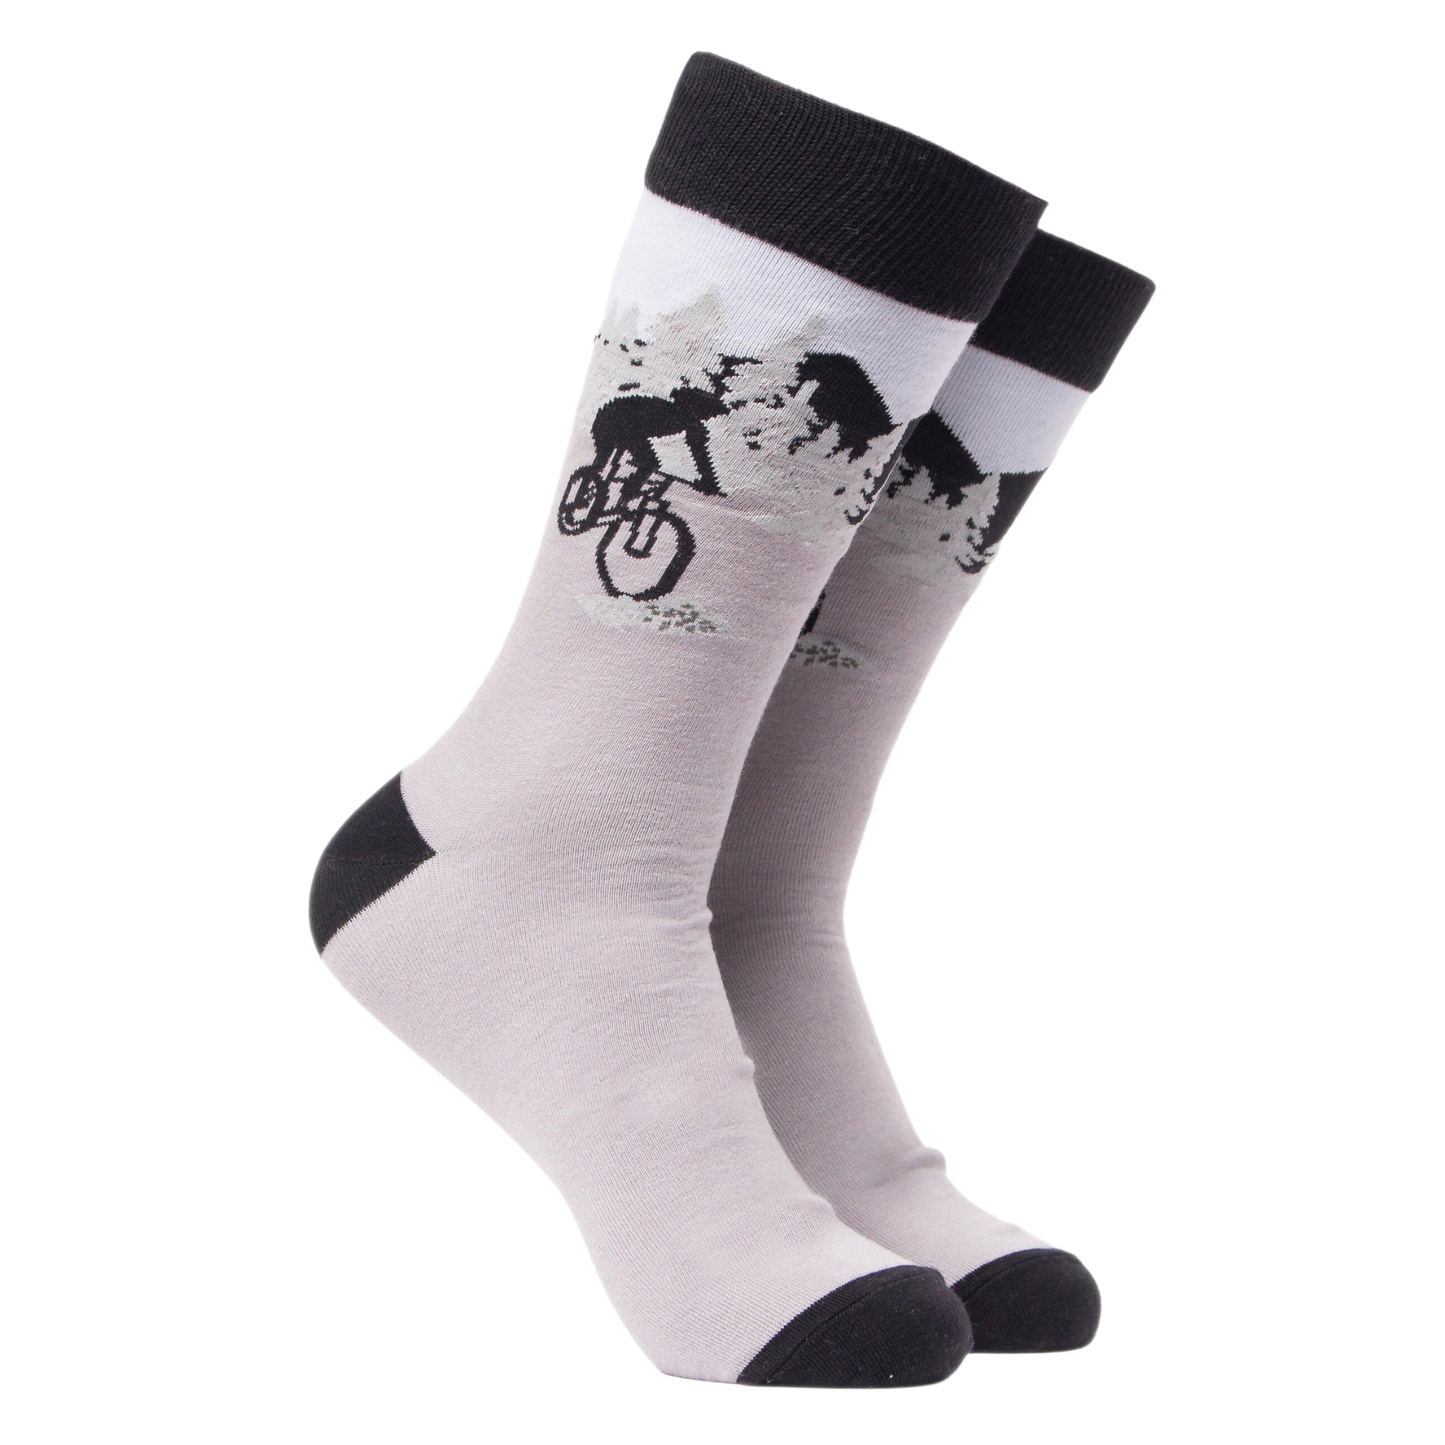 Vicious Cycle Socks